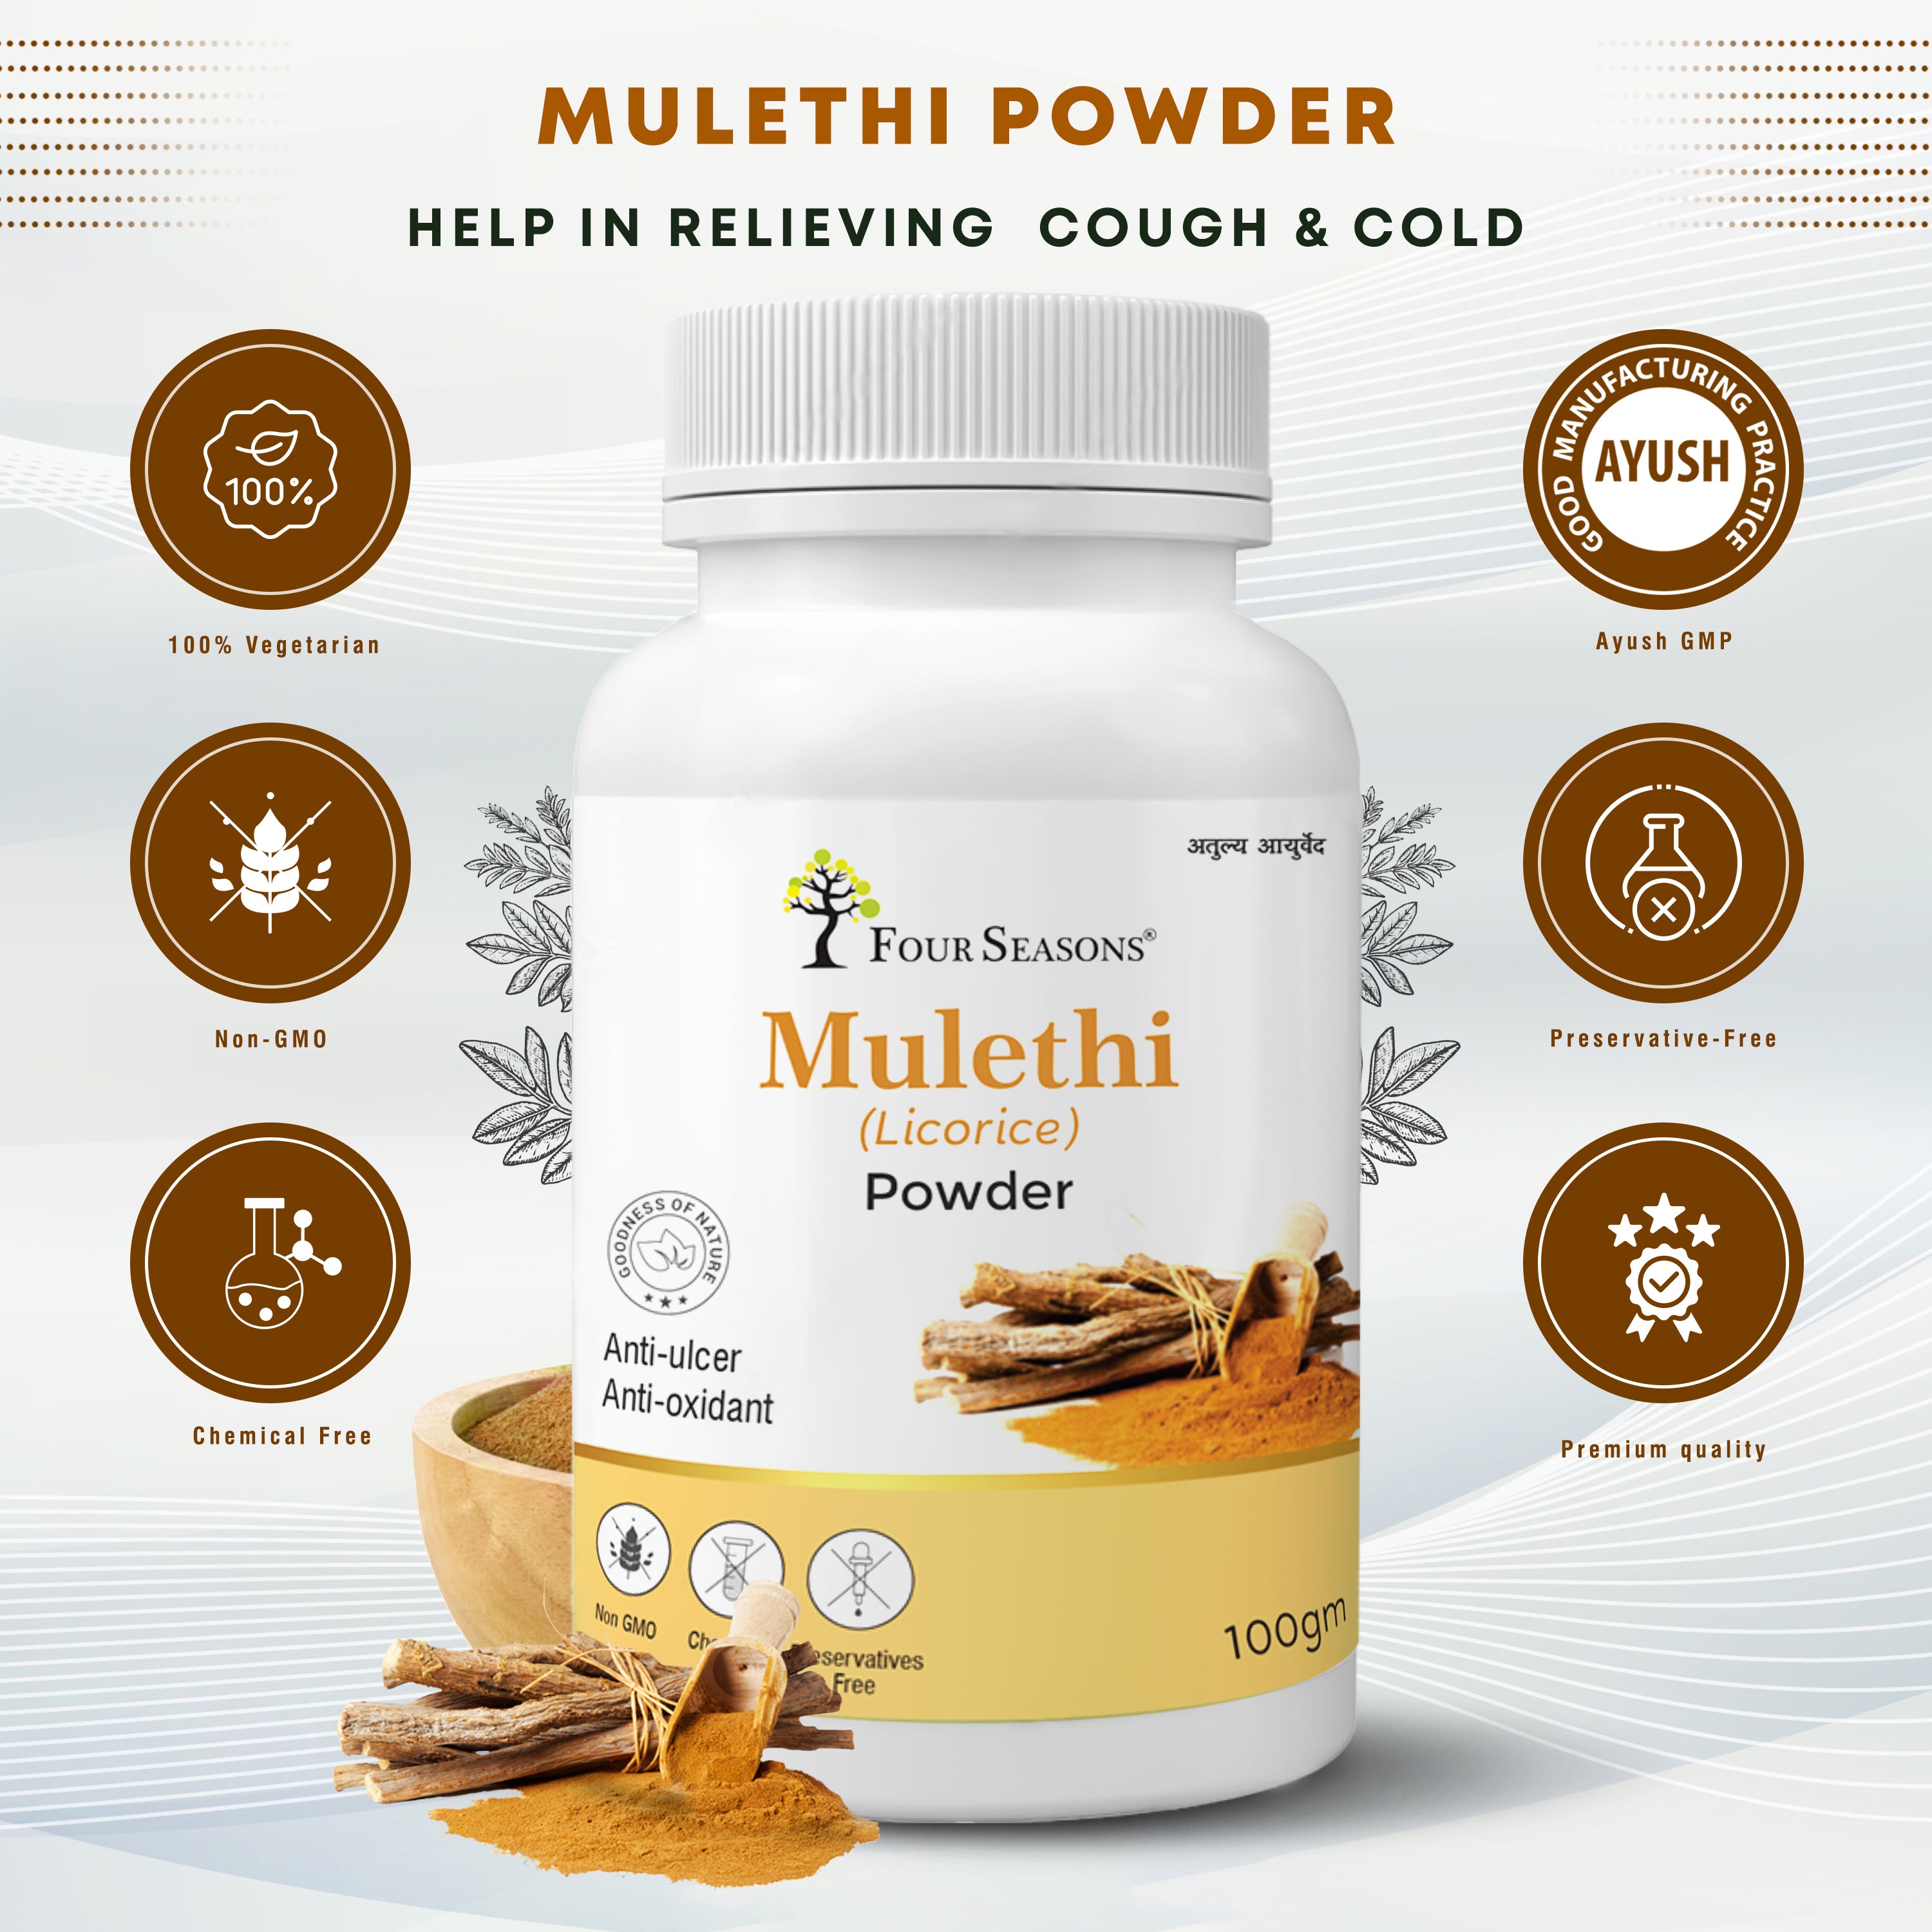 Mulethi (Licorice) Powder